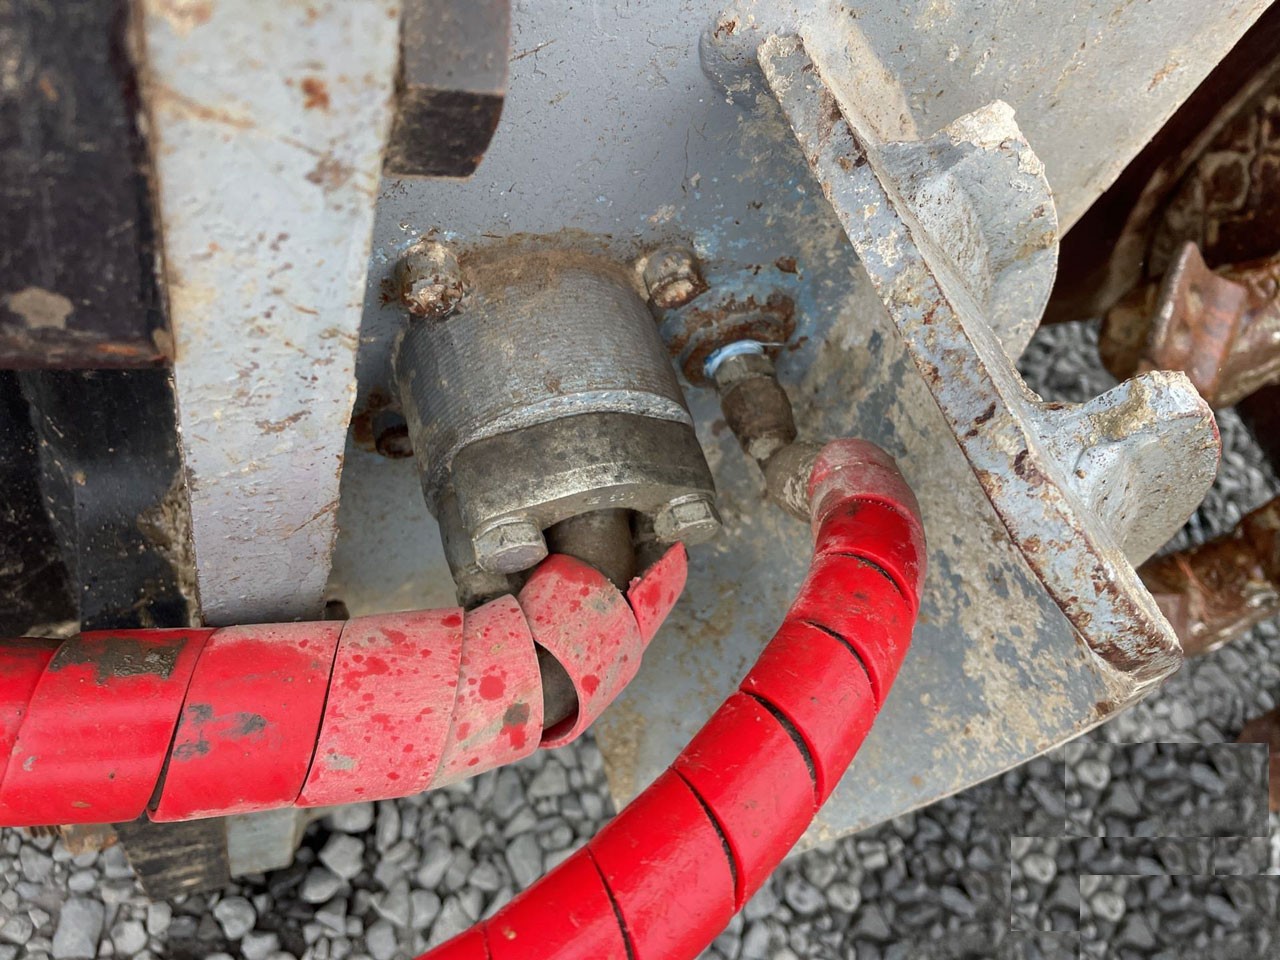 2019-rockwheel-mxr-d30lhtwin-drum-25-42-class-excavator-mixer-grinder-big-7